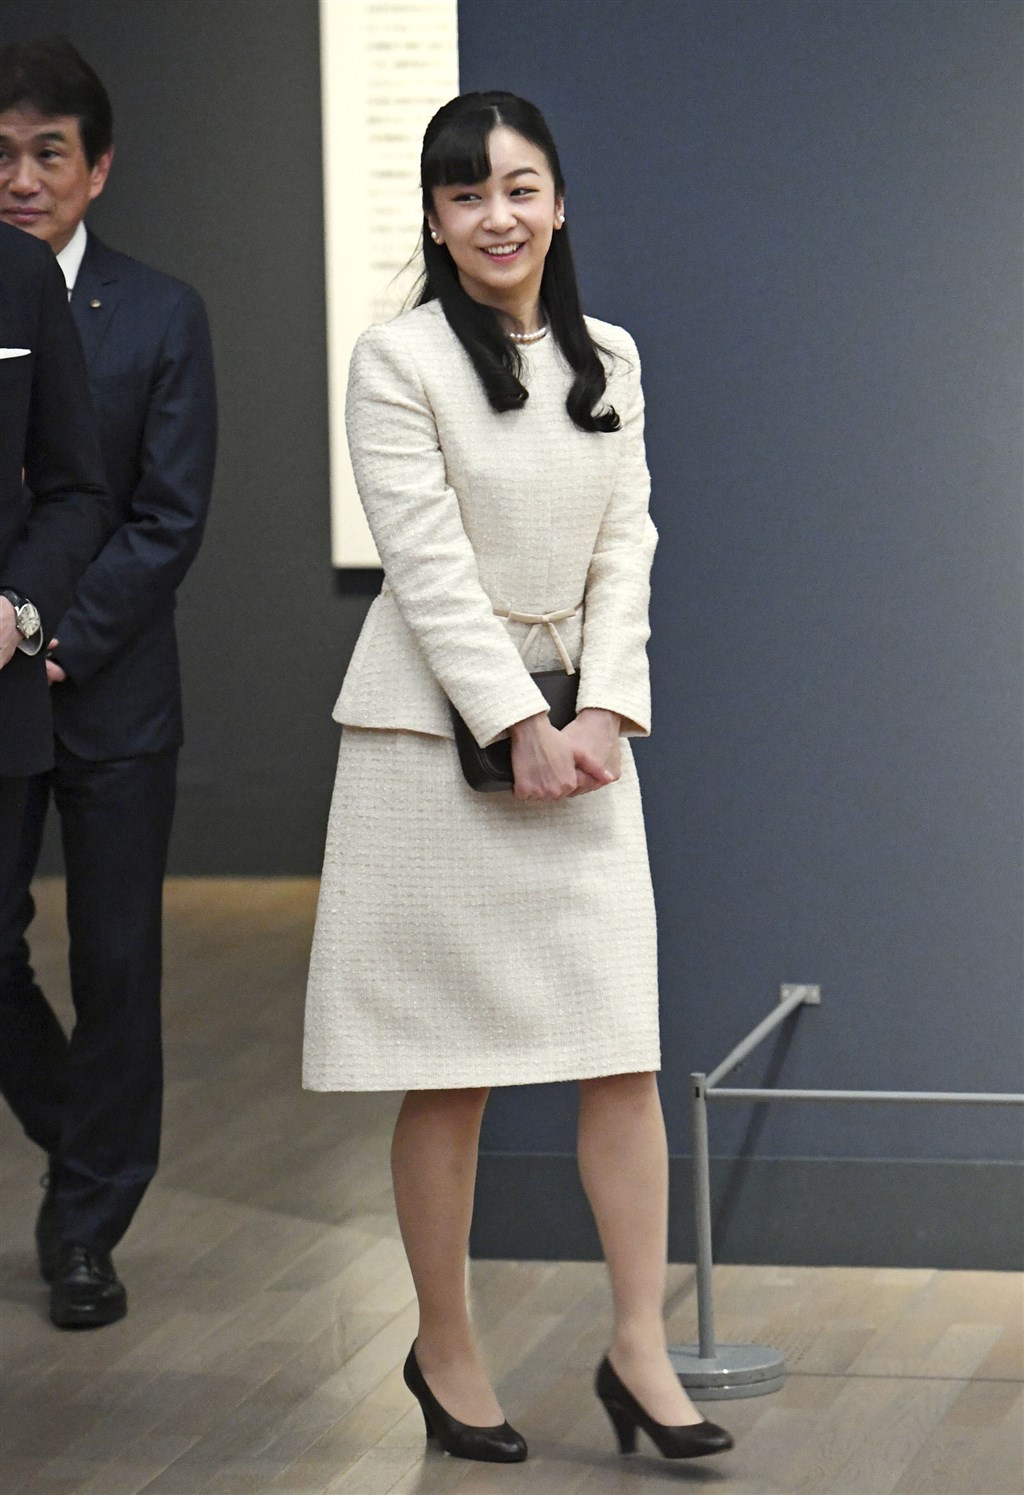 日本皇室佳子公主傳婚事近對象是赴英留學同學 國際 中央社cna